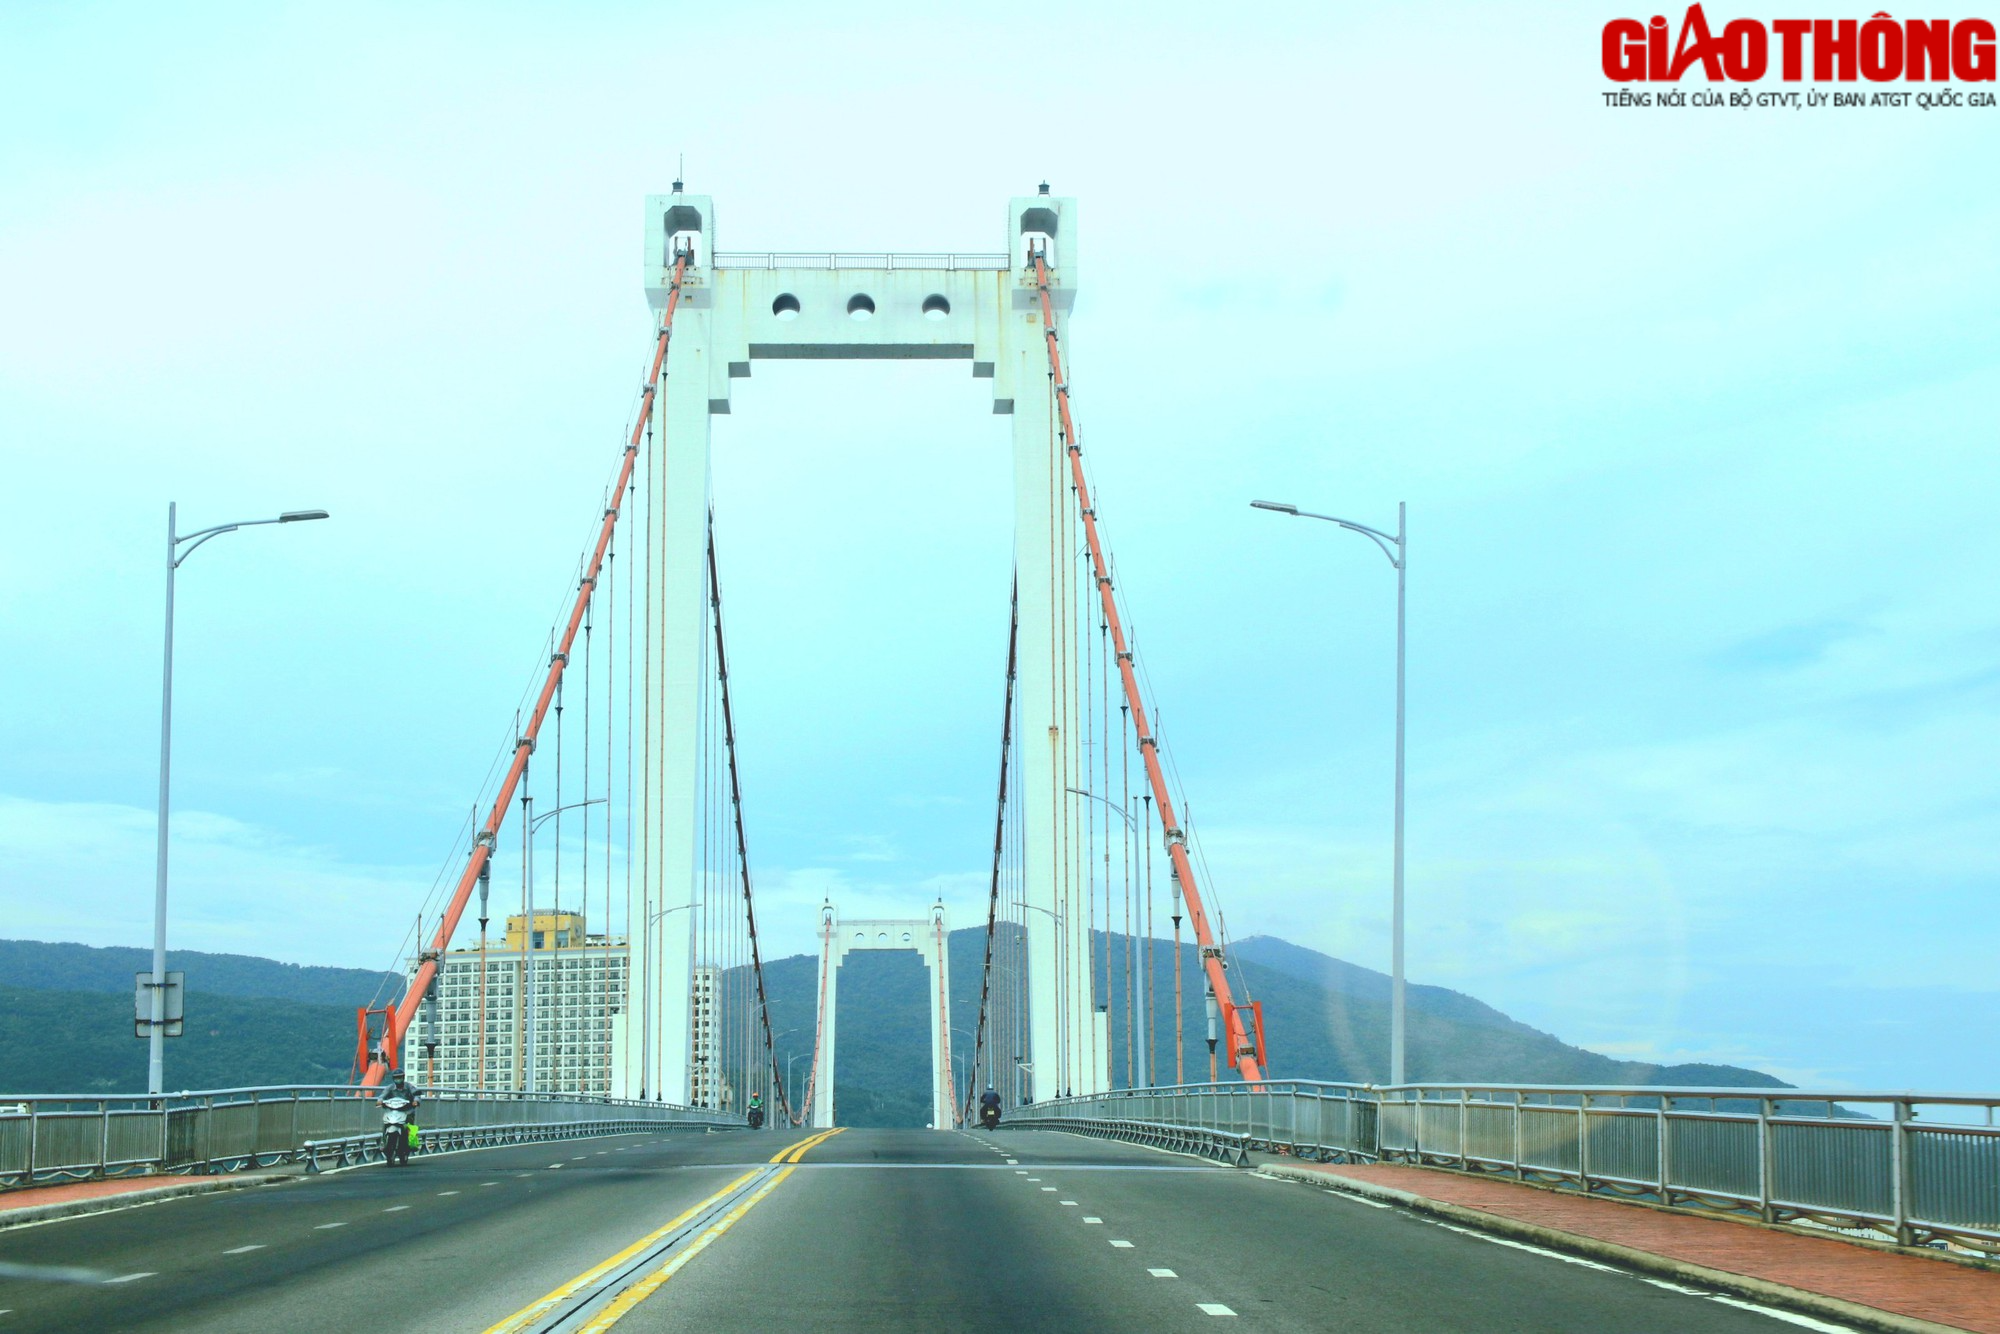 Độc đáo những cây cầu bắc qua sông Hàn - Ảnh 4.